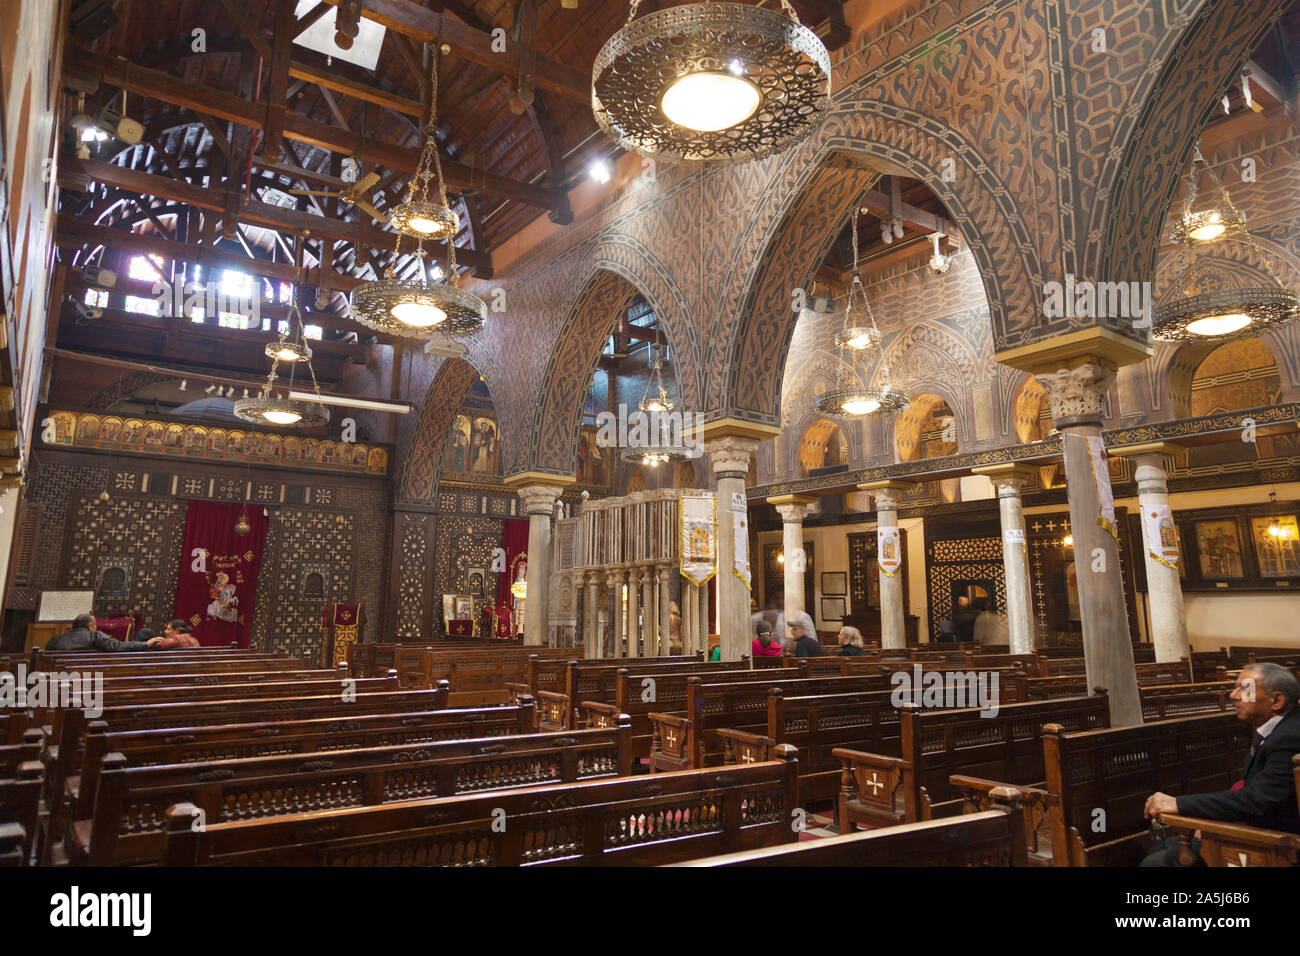 Ägypten, Kairo, Innenansicht der koptisch-orthodoxen Kirche der Heiligen Jungfrau Maria. Auch bekannt als Hängende Kirche. Stockfoto